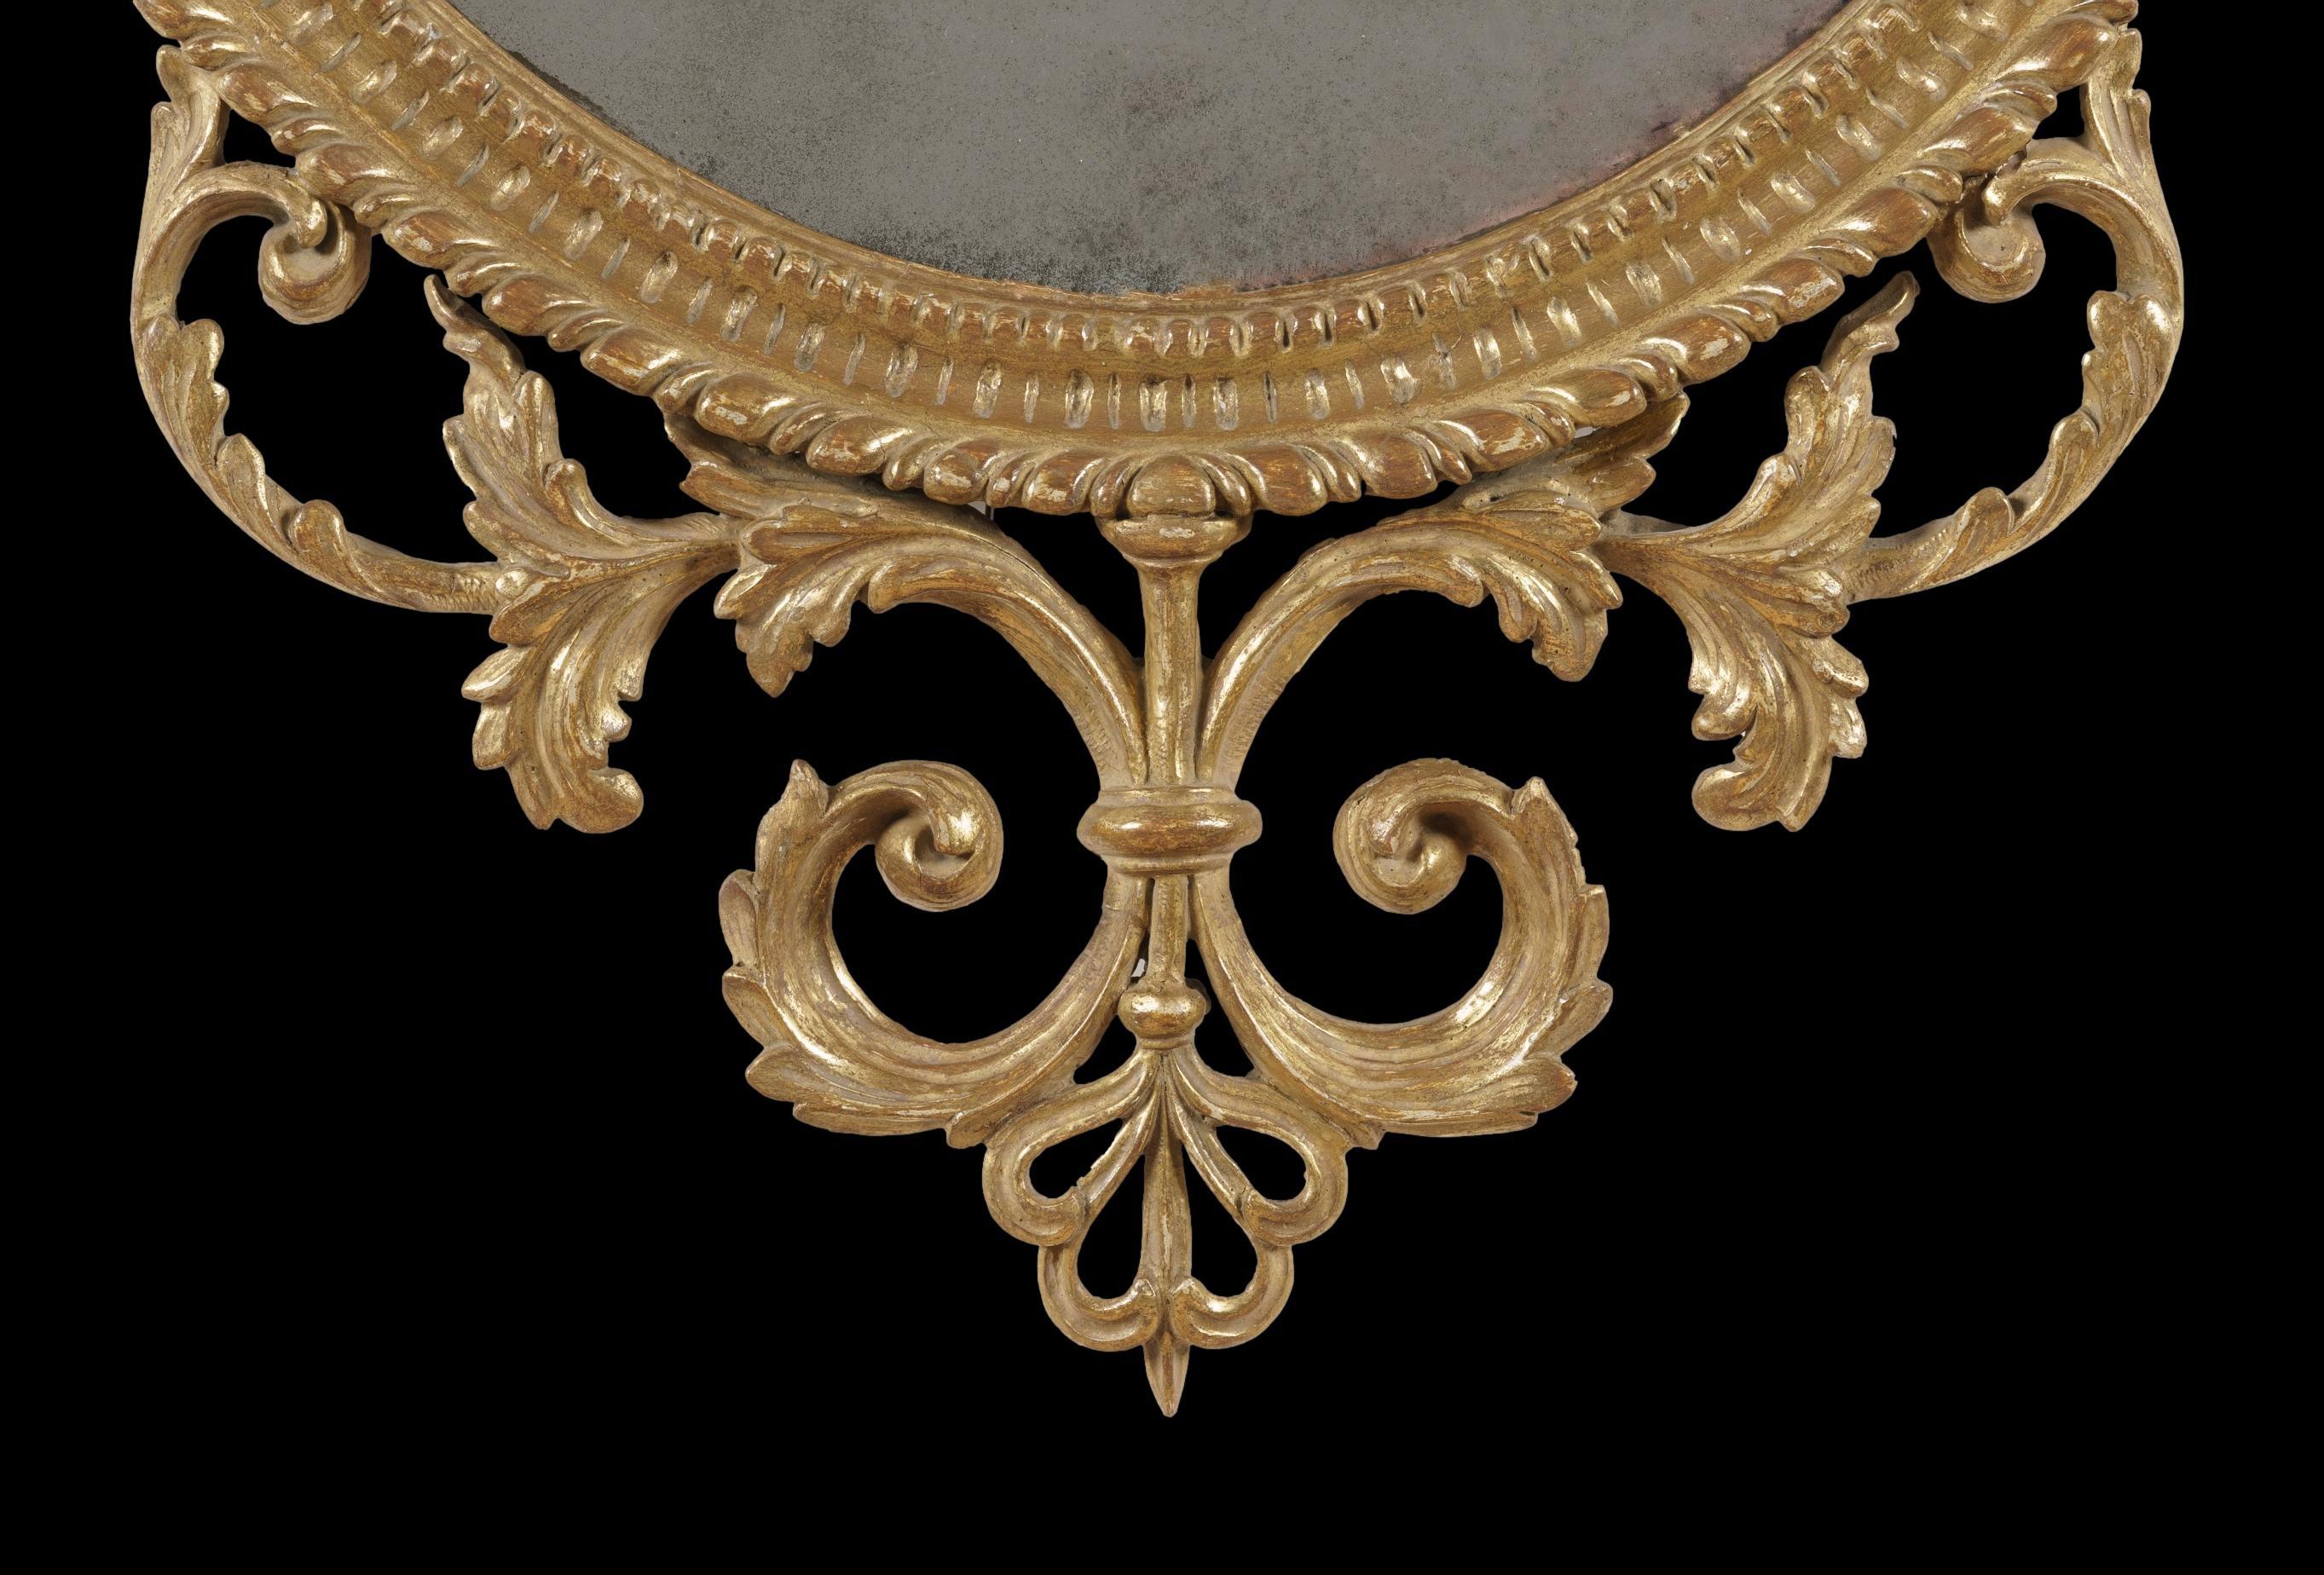 Ein schöner Spiegel in der Manier von George III

Aus vergoldetem Holz, mit einer ovalen Spiegelplatte in einer geschnitzten Leiste, oben und unten mit Akanthusblättern, darüber ein zentrales Vasenmotiv mit drapierten Glockenblumenschalen, die die